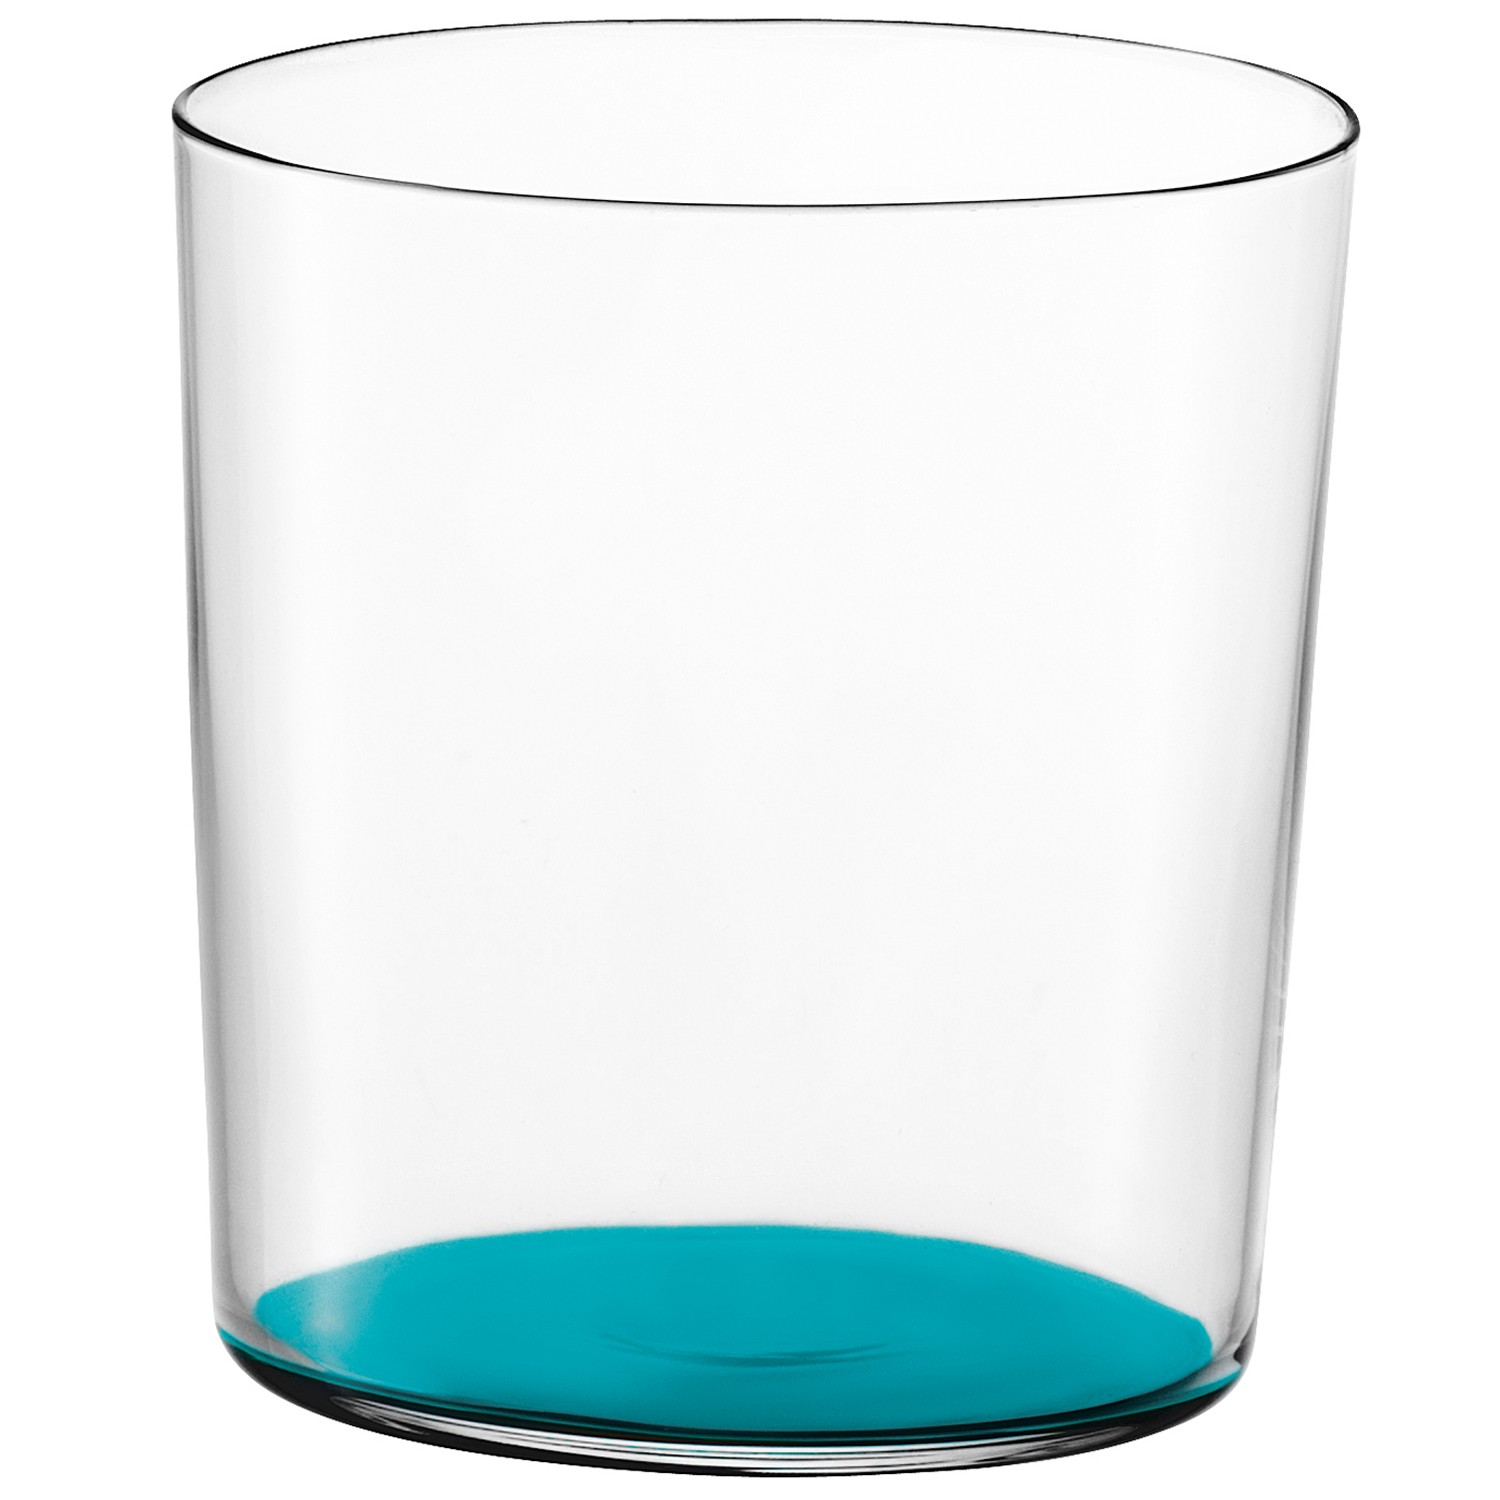 Gio bicchiere colorato 390ml Blu Oceano1